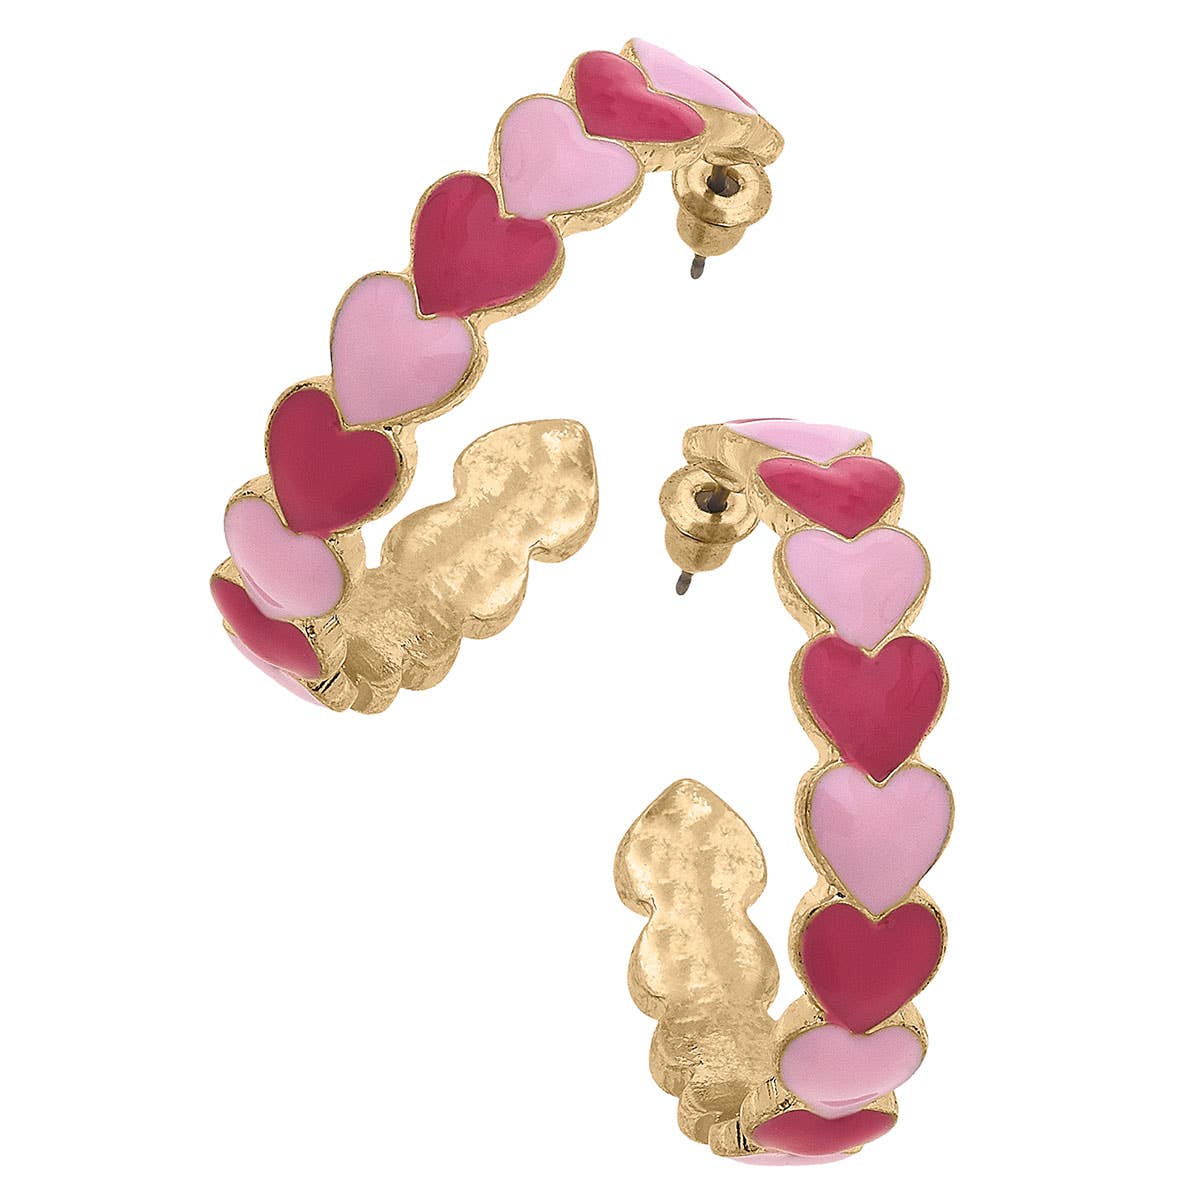 Canvas Style - Love Jointed Hearts Enamel Hoop Earrings in Pink & Fuchsia